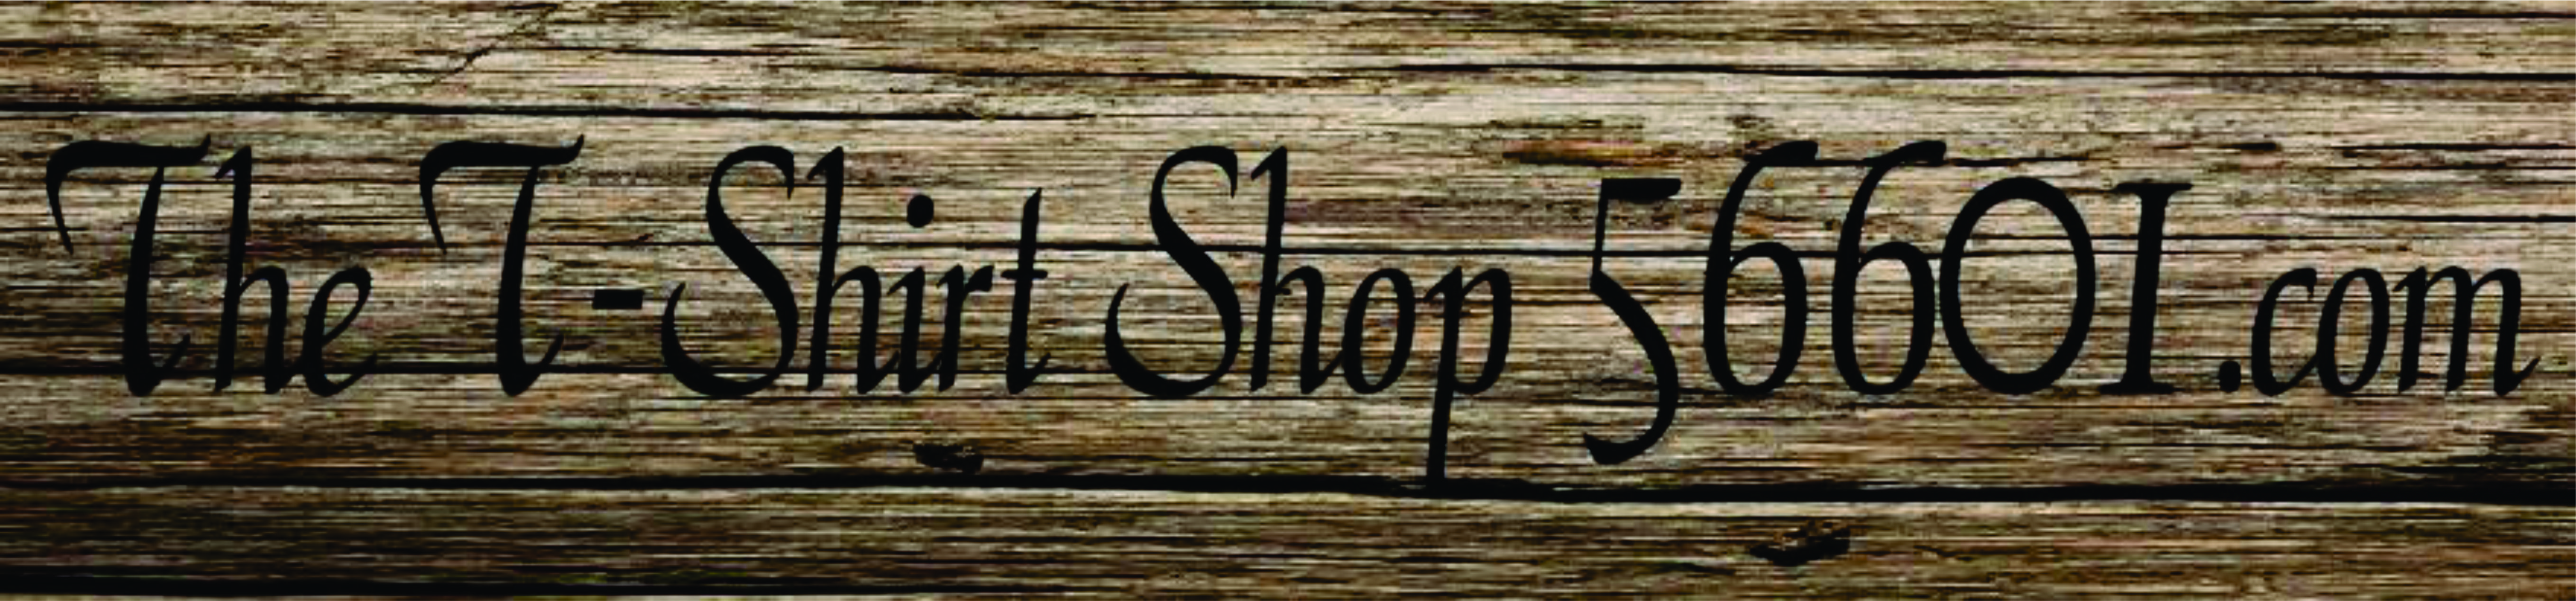 Sale Items - The T-Shirt Shop 56601